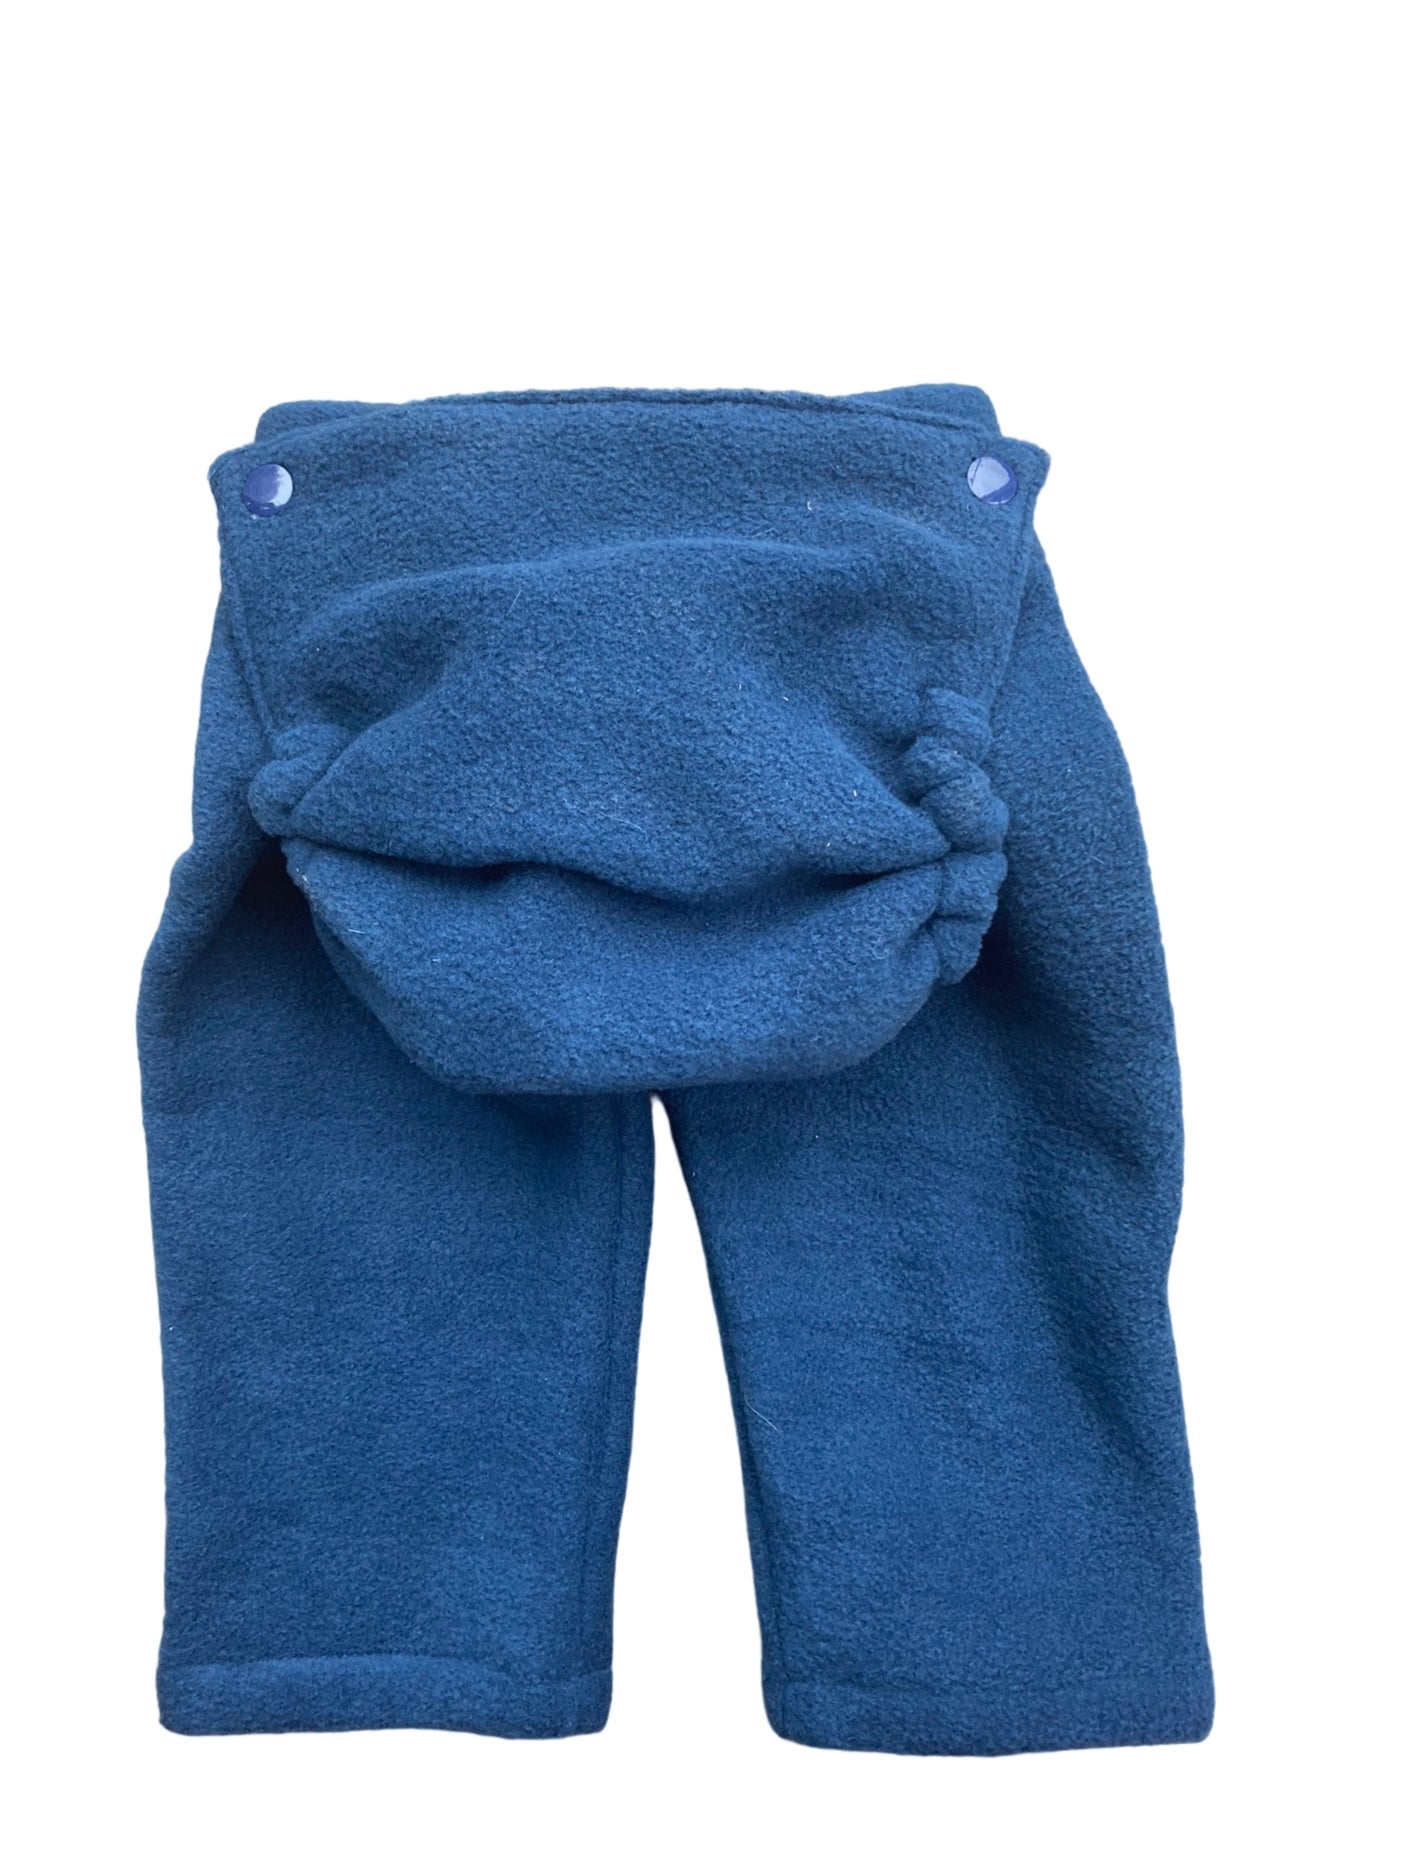 Pantalon Chappy-Nappy Bleu Royal